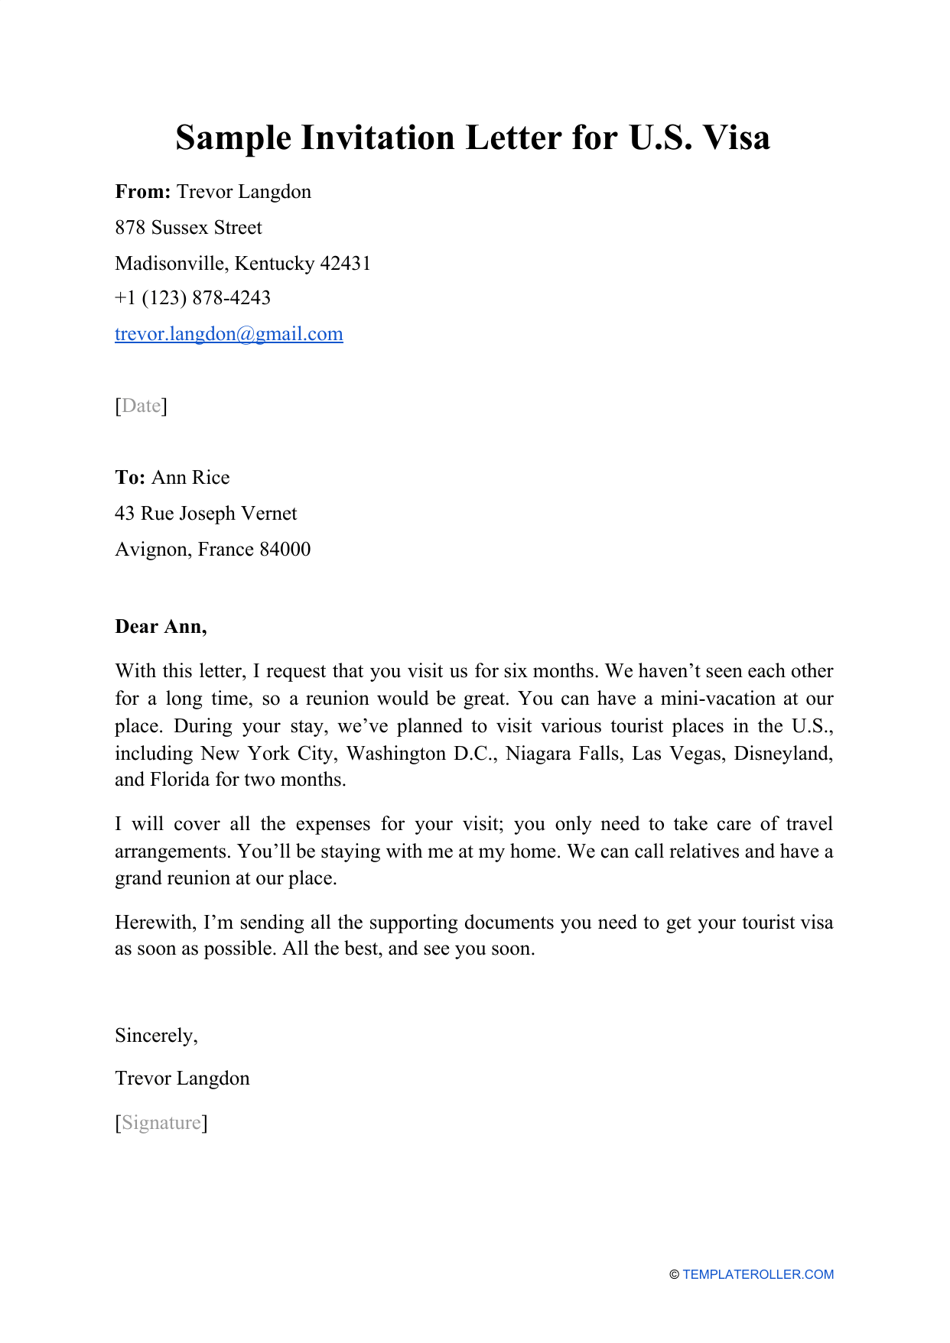 Sample Invitation Letter for U.S. Visa, Page 1